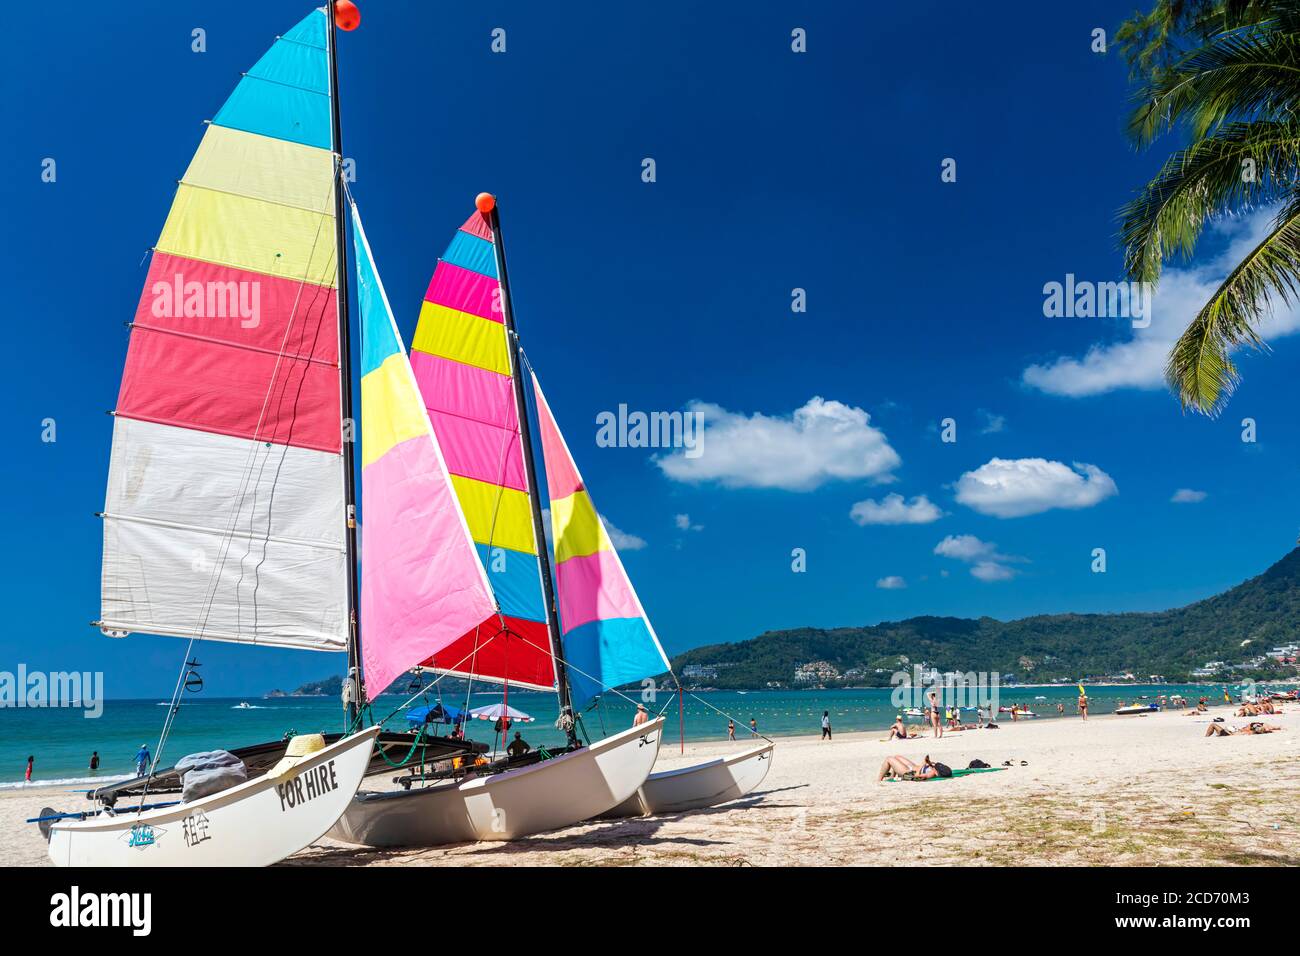 Location de bateaux sur la plage de Patong, Phuket, Thaïlande Banque D'Images